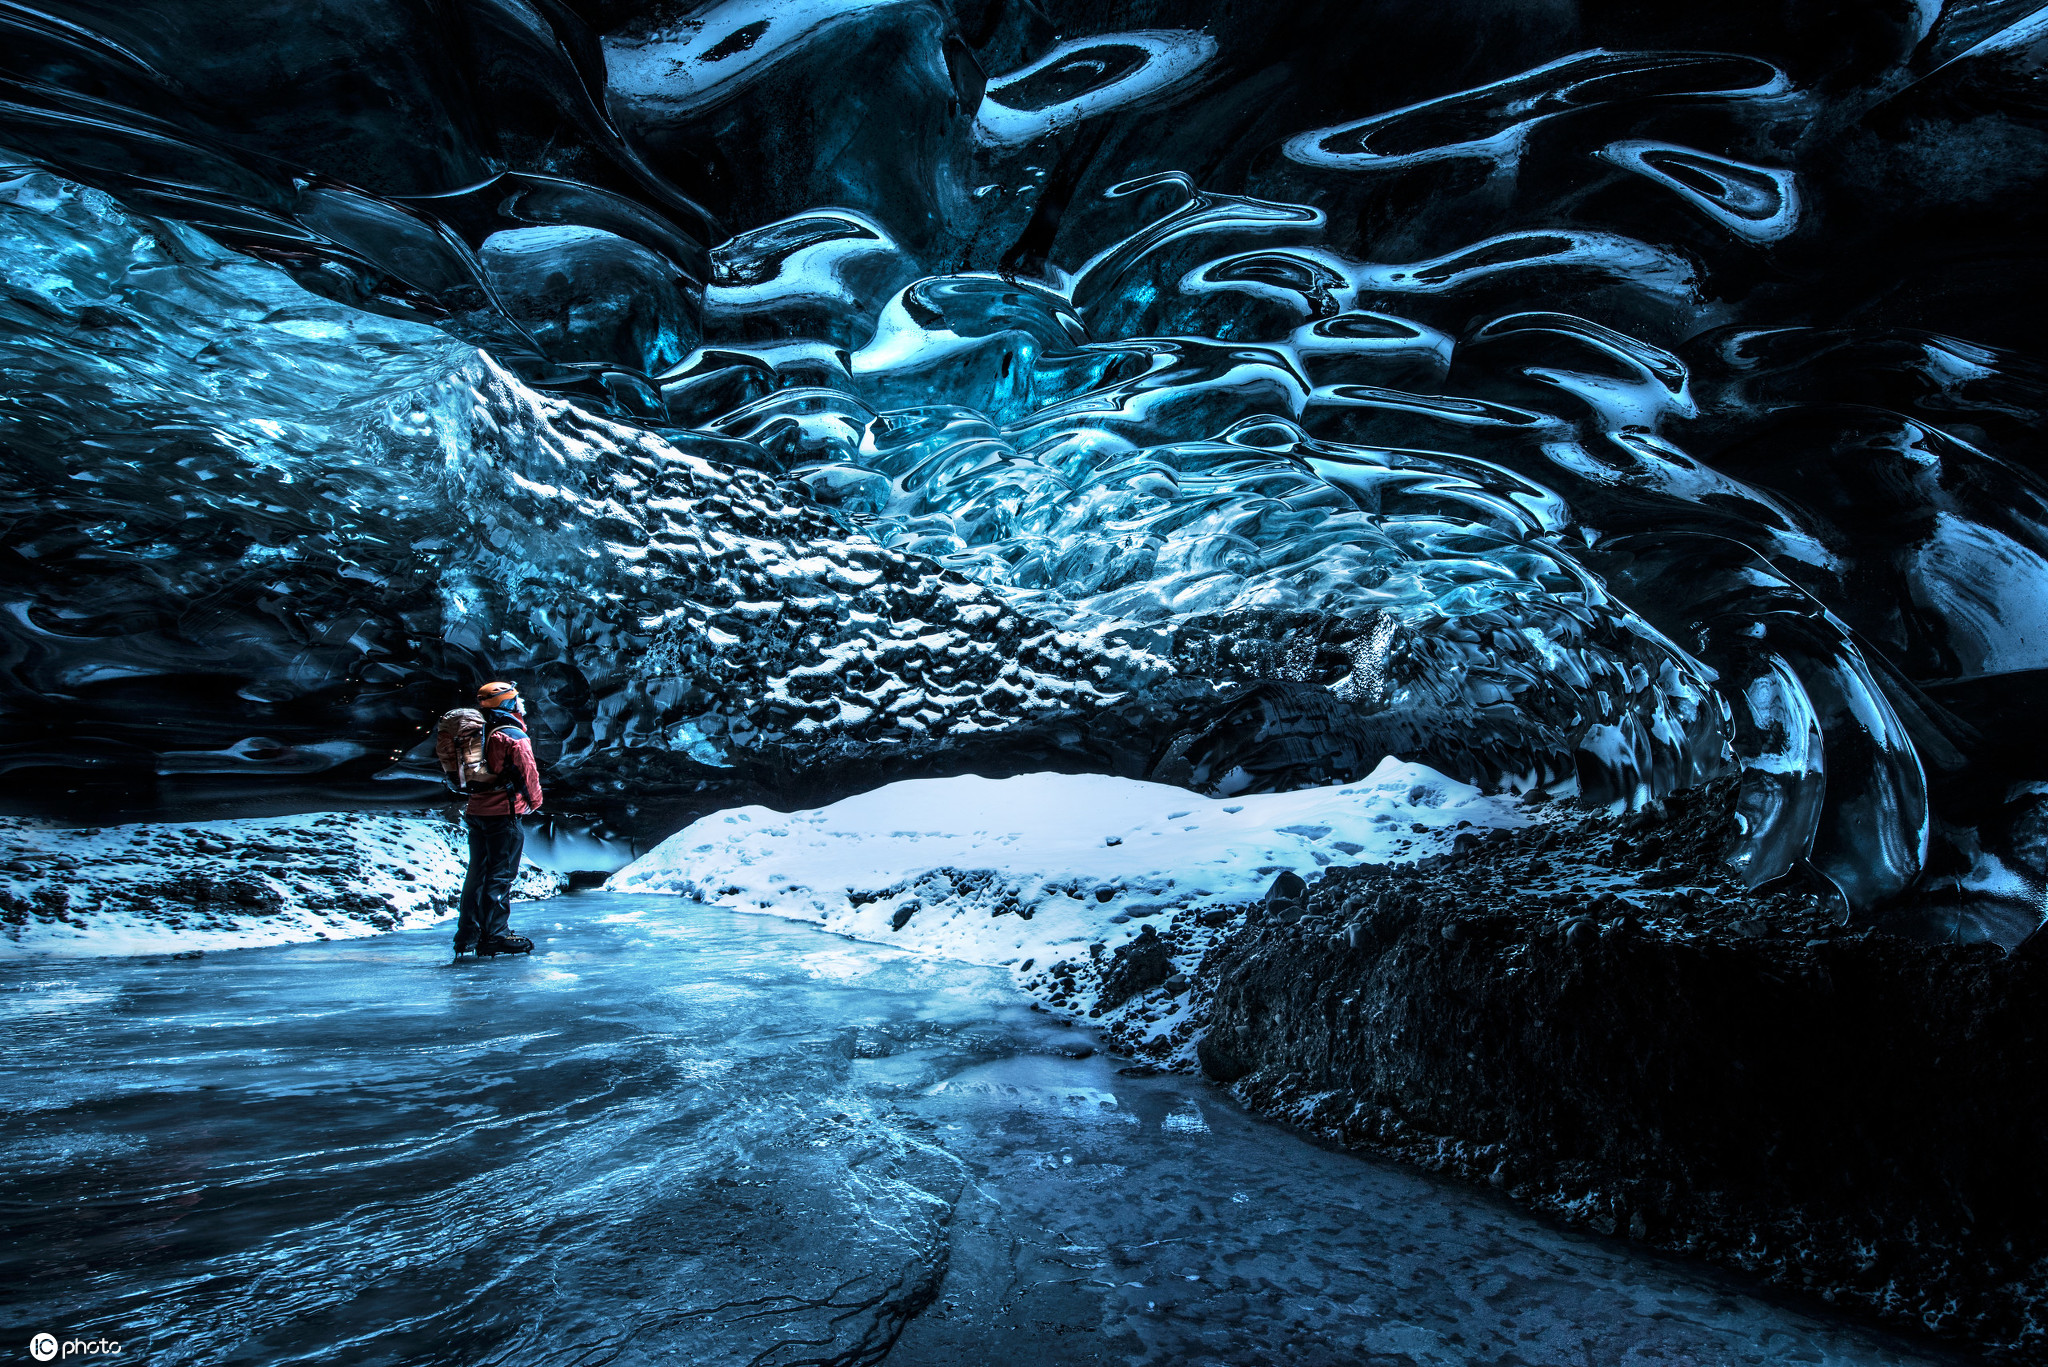 他们进入冰洞穴,内部晶莹剔透,流动的水都被凝固住